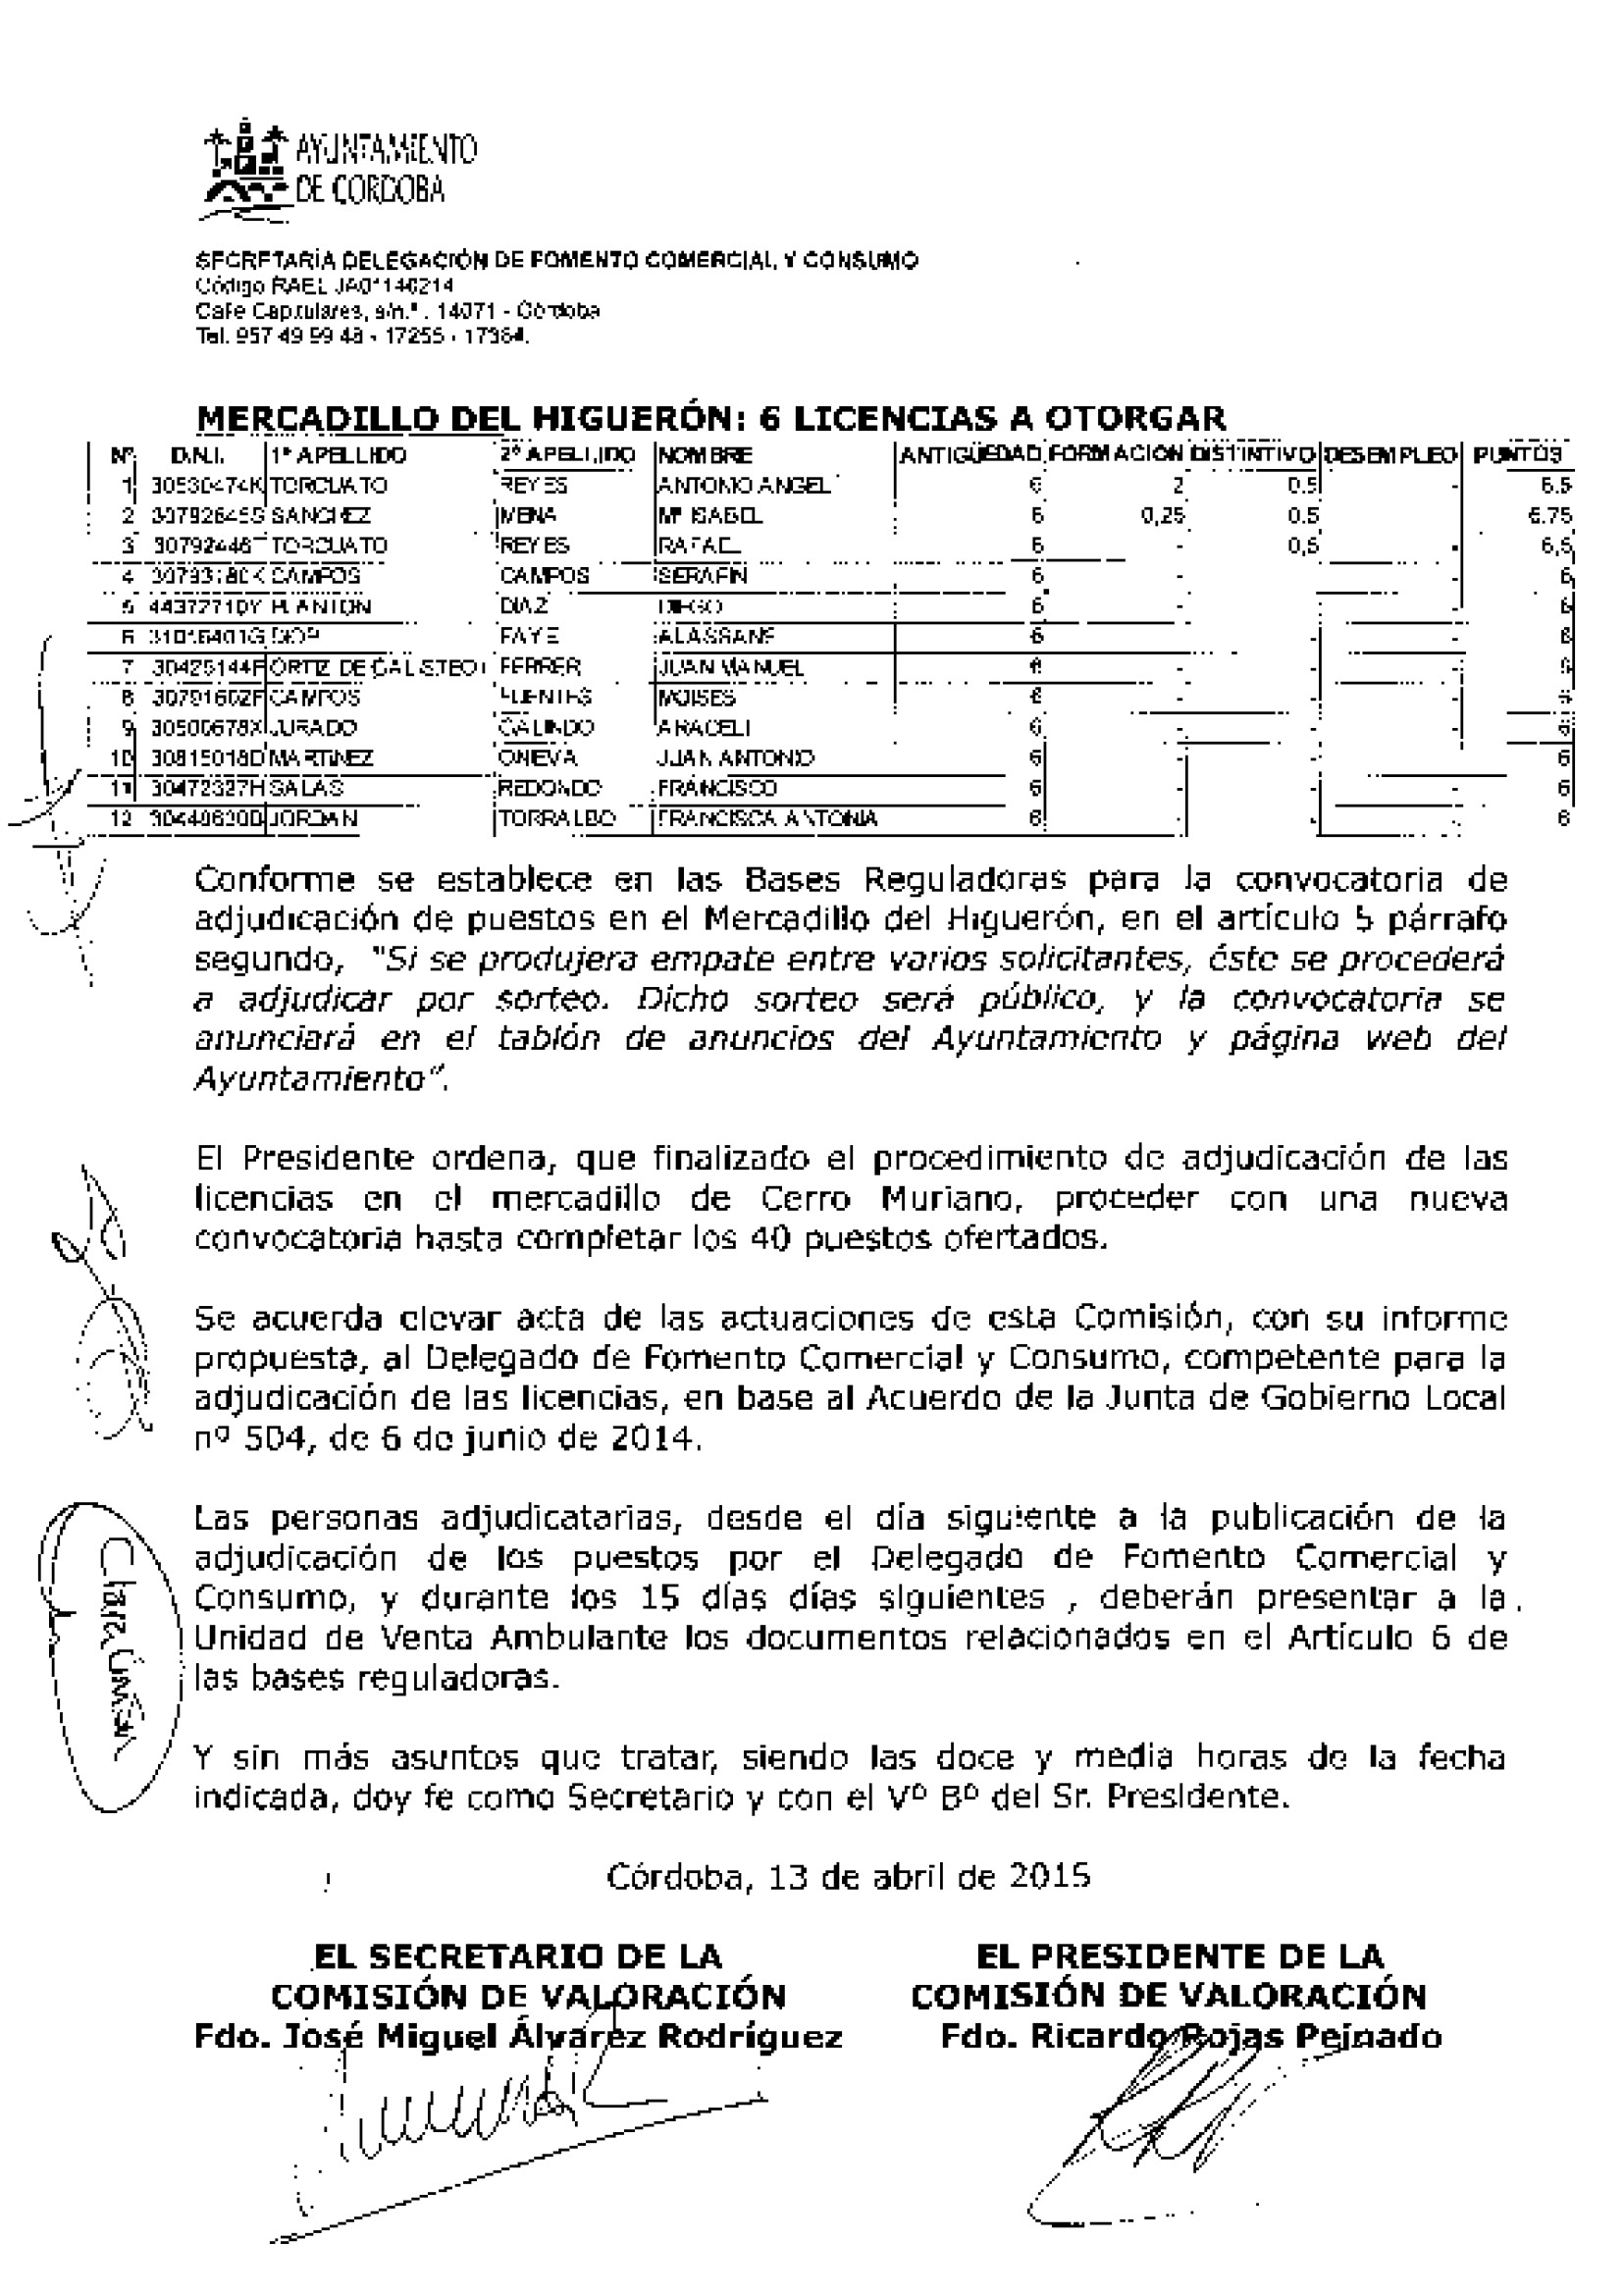 ventaambu acta resolucion licencias Higueron Muriano Página 2